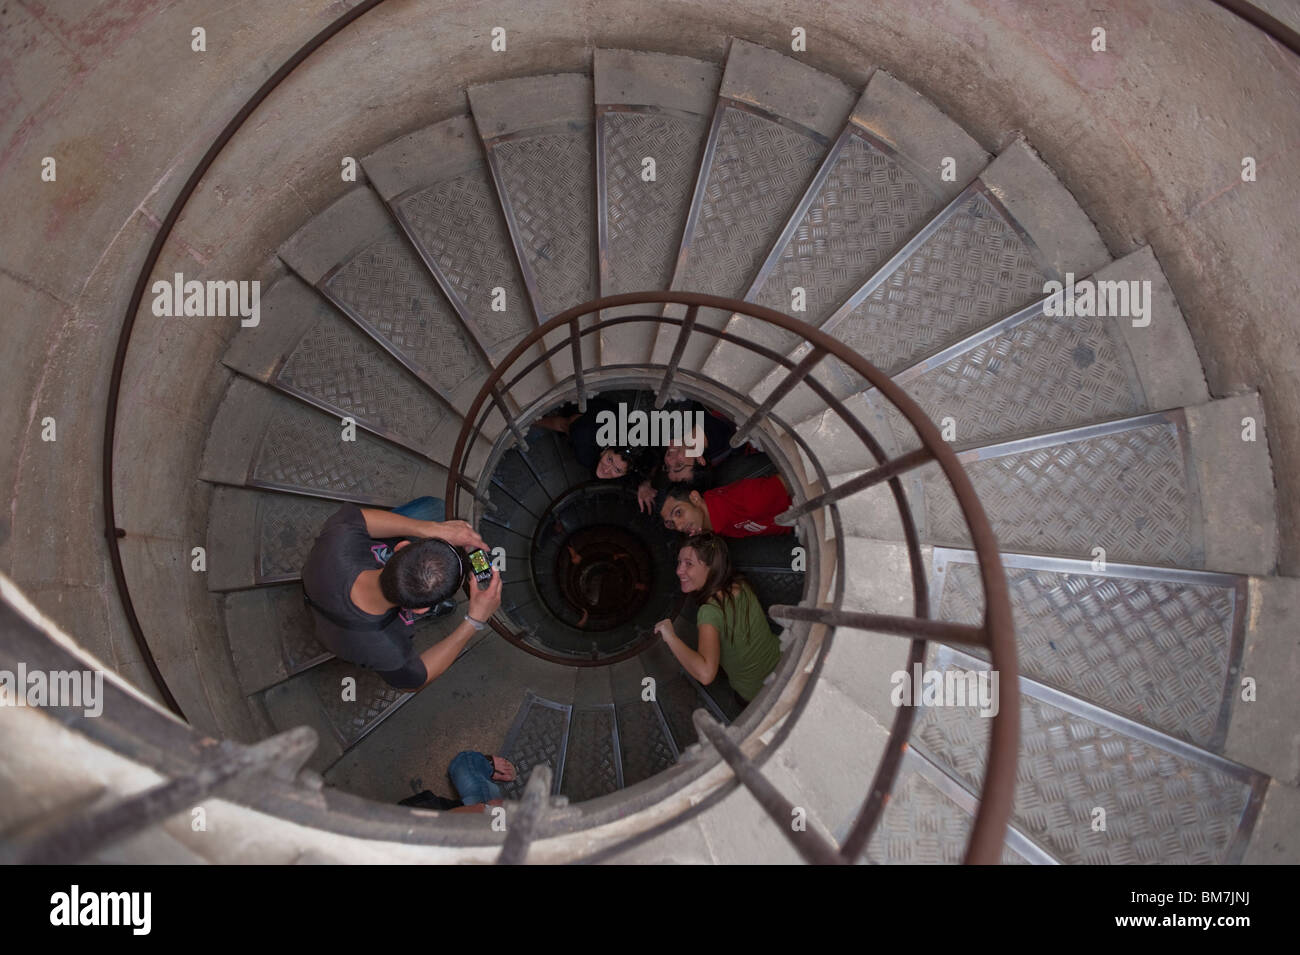 Angolo alto, scalinata a spirale, piccoli gruppi di persone, posa per le foto, all'interno dell'Arco di Trionfo, monumenti francesi, Parigi, Francia, arrampicata sulle scale interne Foto Stock